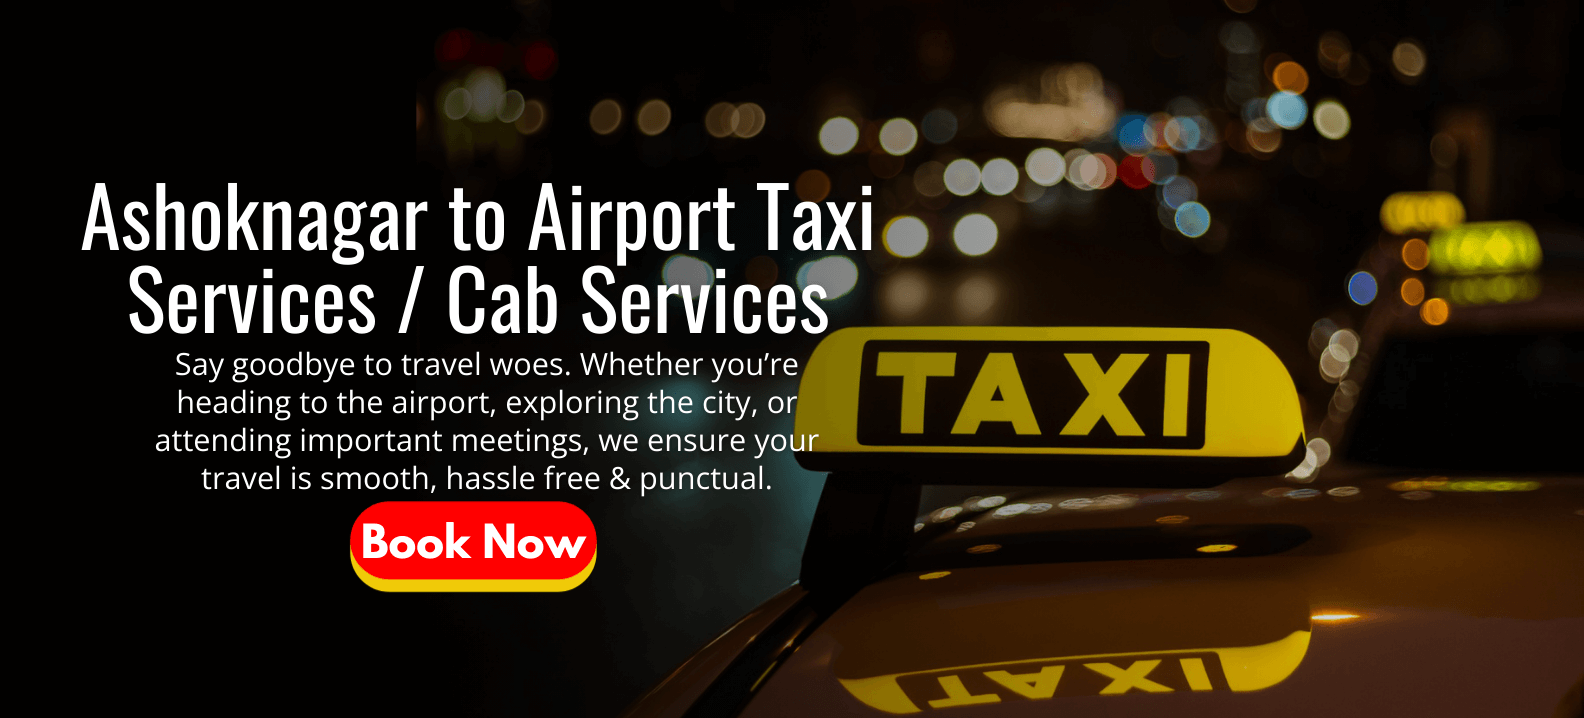 Ashoknagar to Airport Taxi Services _ Cab Services